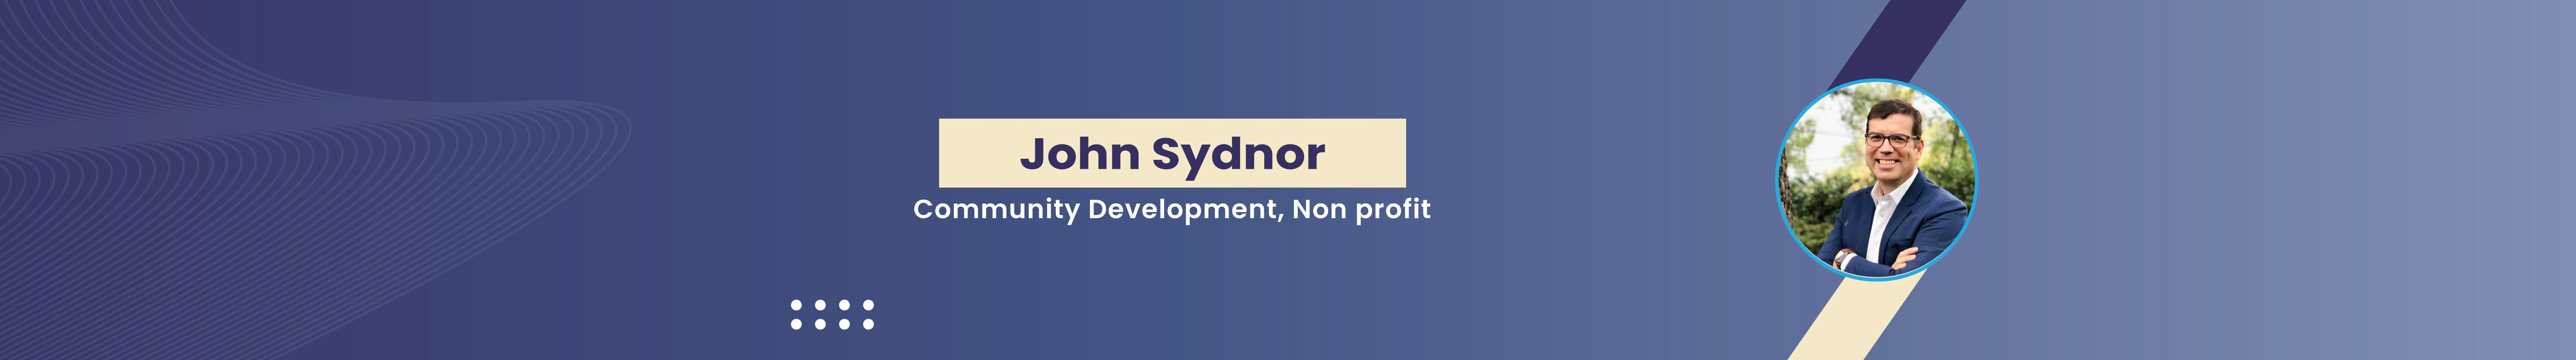 John Sydnor profil başlığı